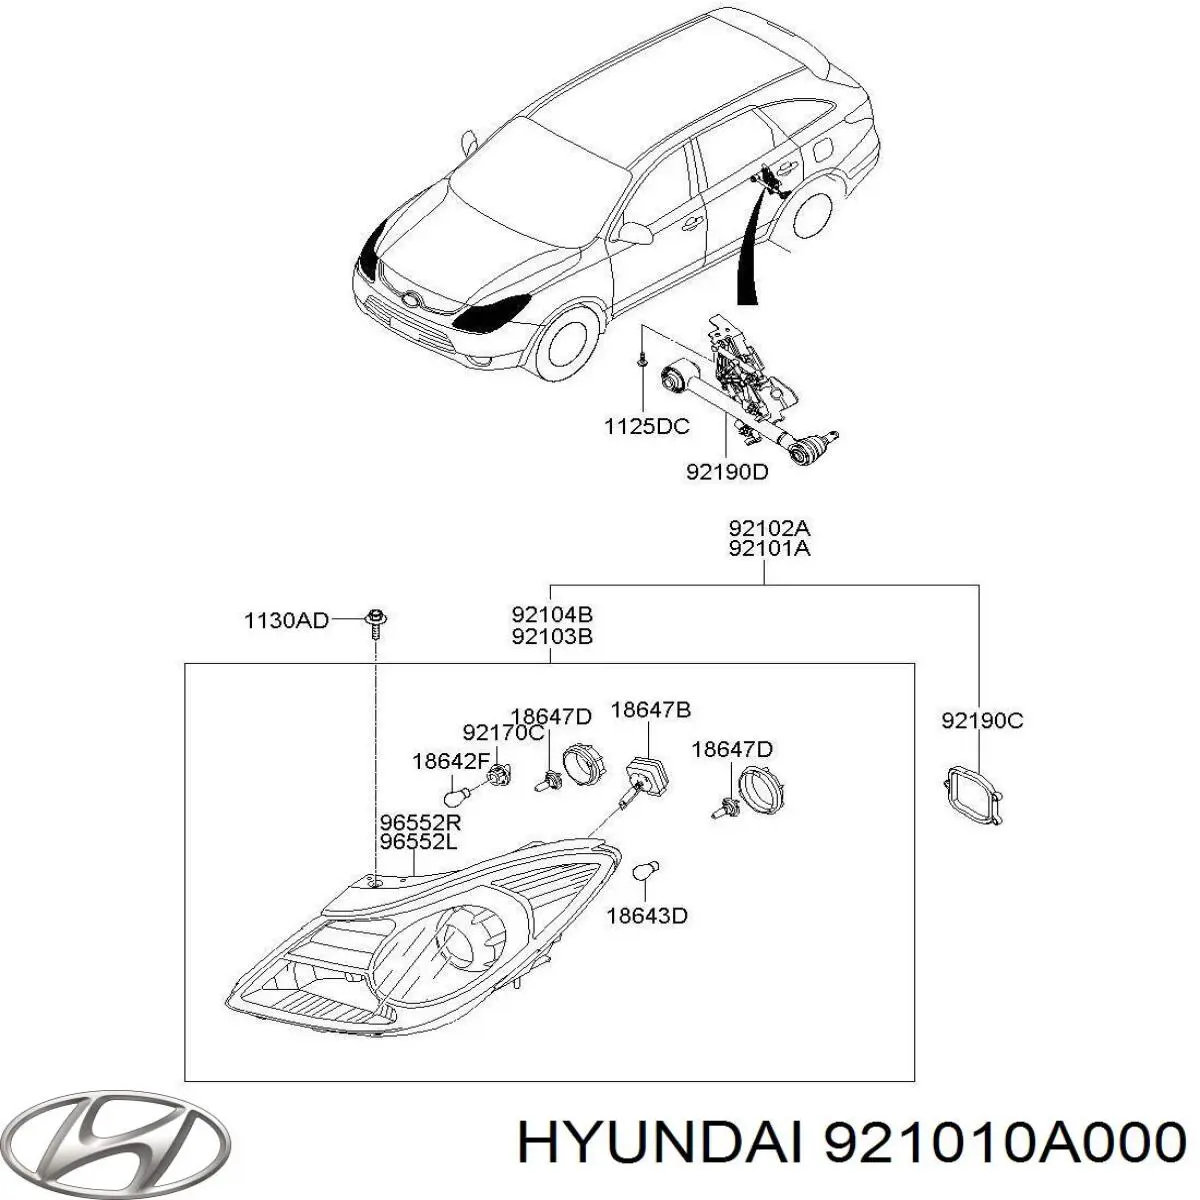 921010A000 Hyundai/Kia faro izquierdo